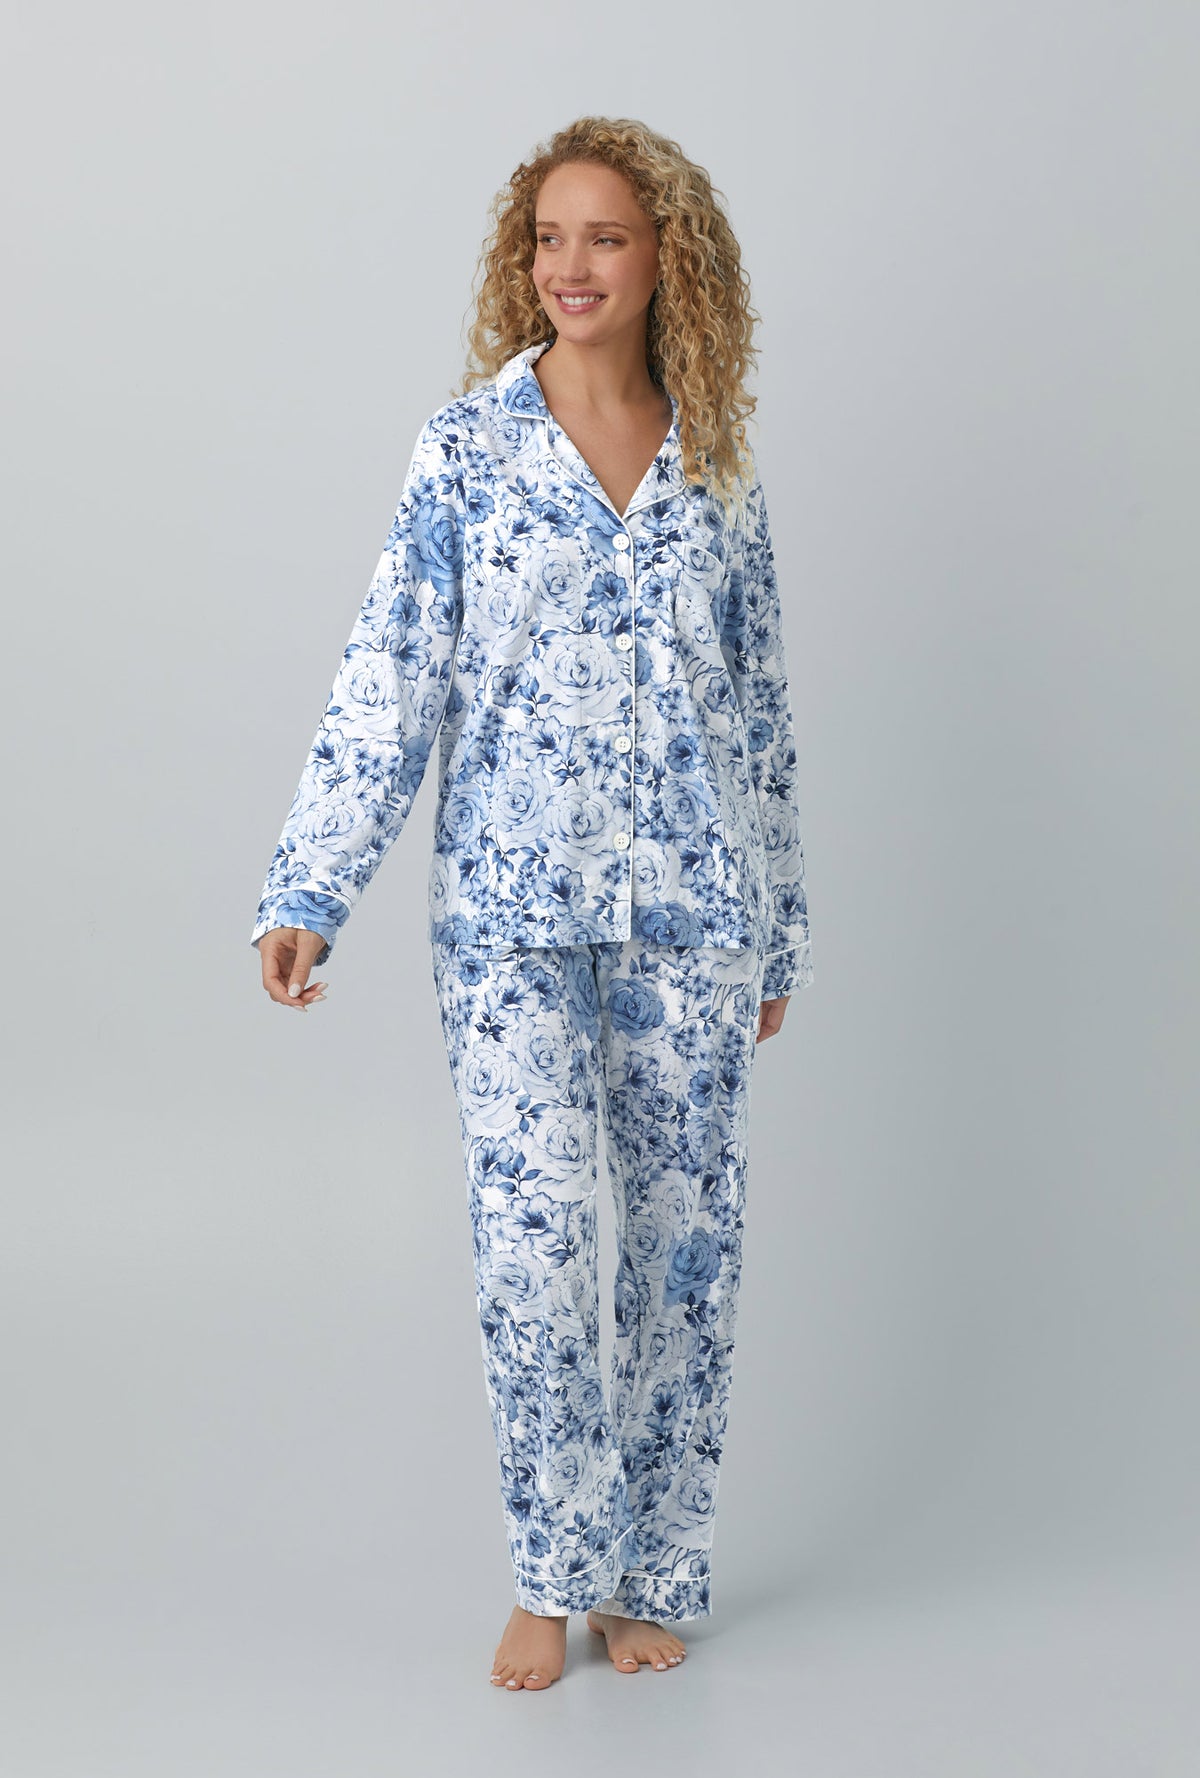 Bedhead Pajamas Website